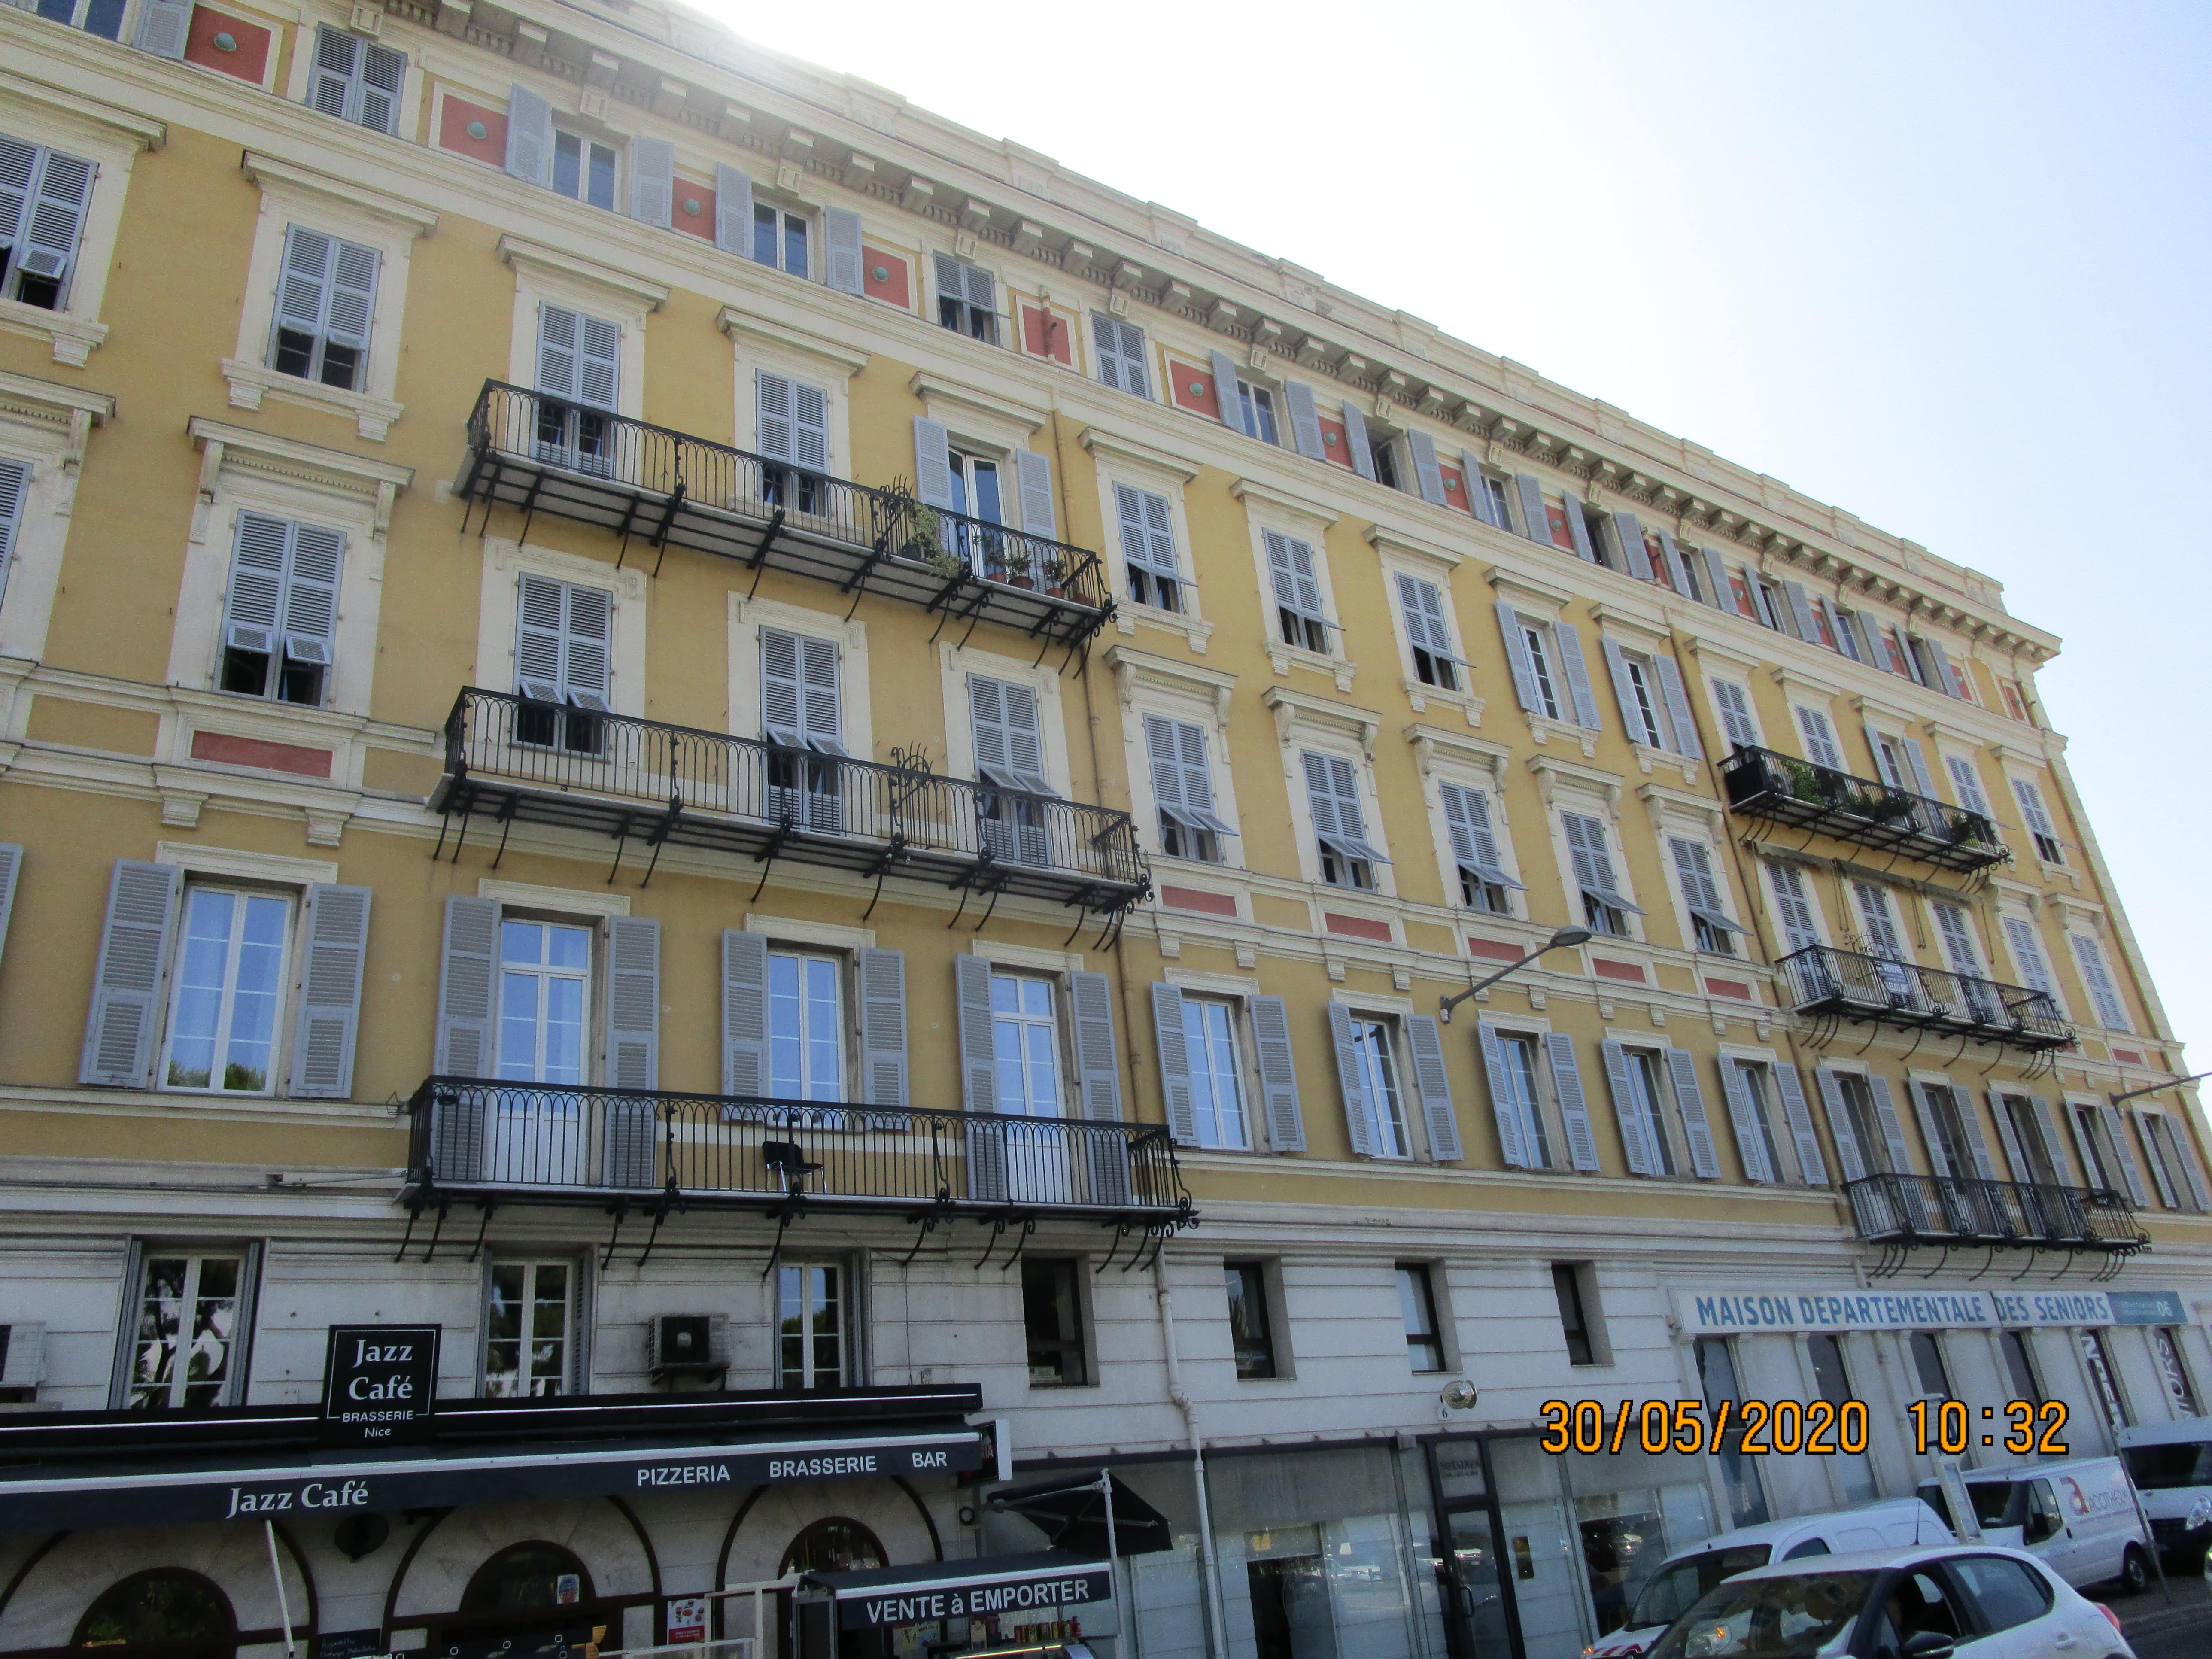 Menuiserie BARNI menuisier ébéniste à Nice, depuis 1920